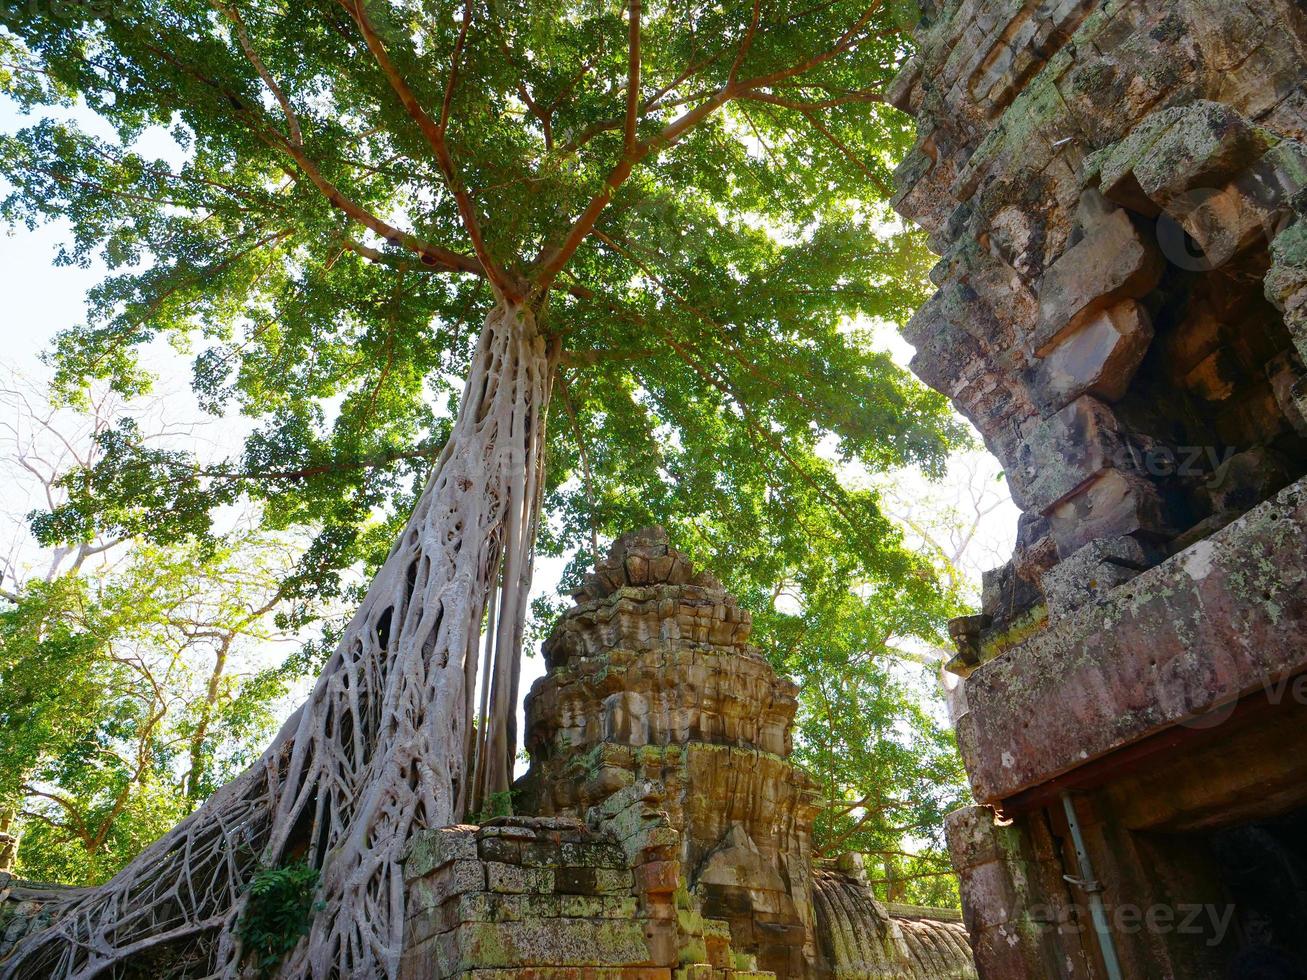 ta prohm tempel in angkor wat complex, siem reap cambodja. foto